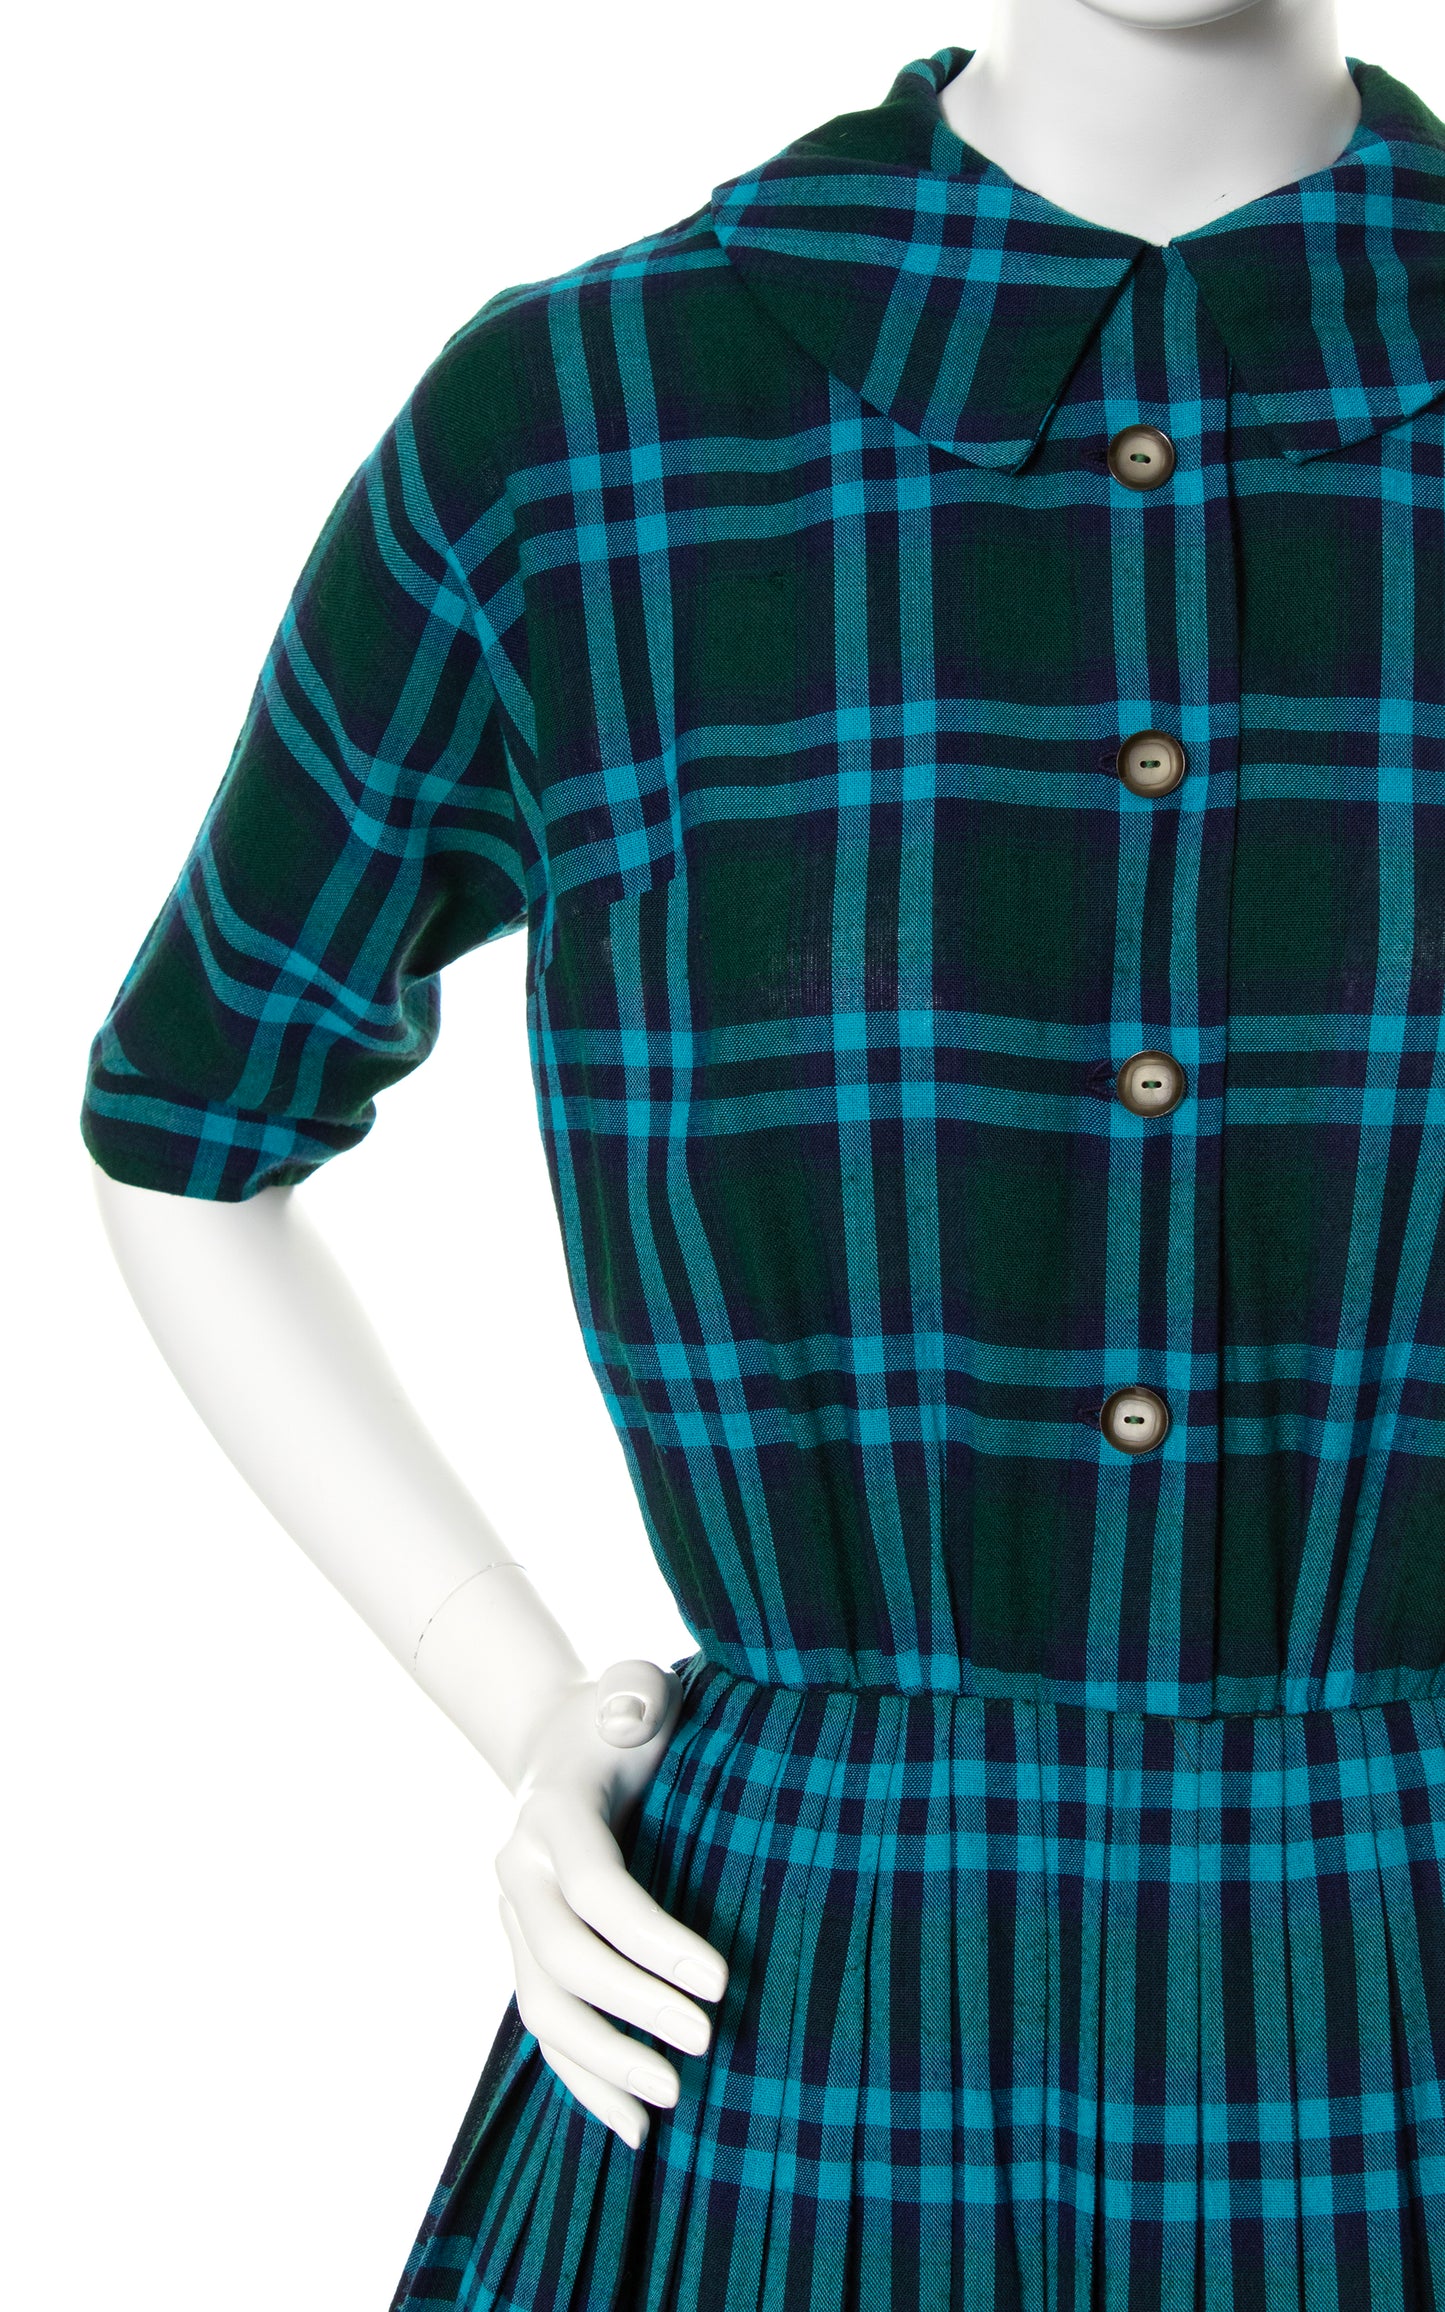 1950s Plaid Wool Shirtwaist Dress | x-small/small